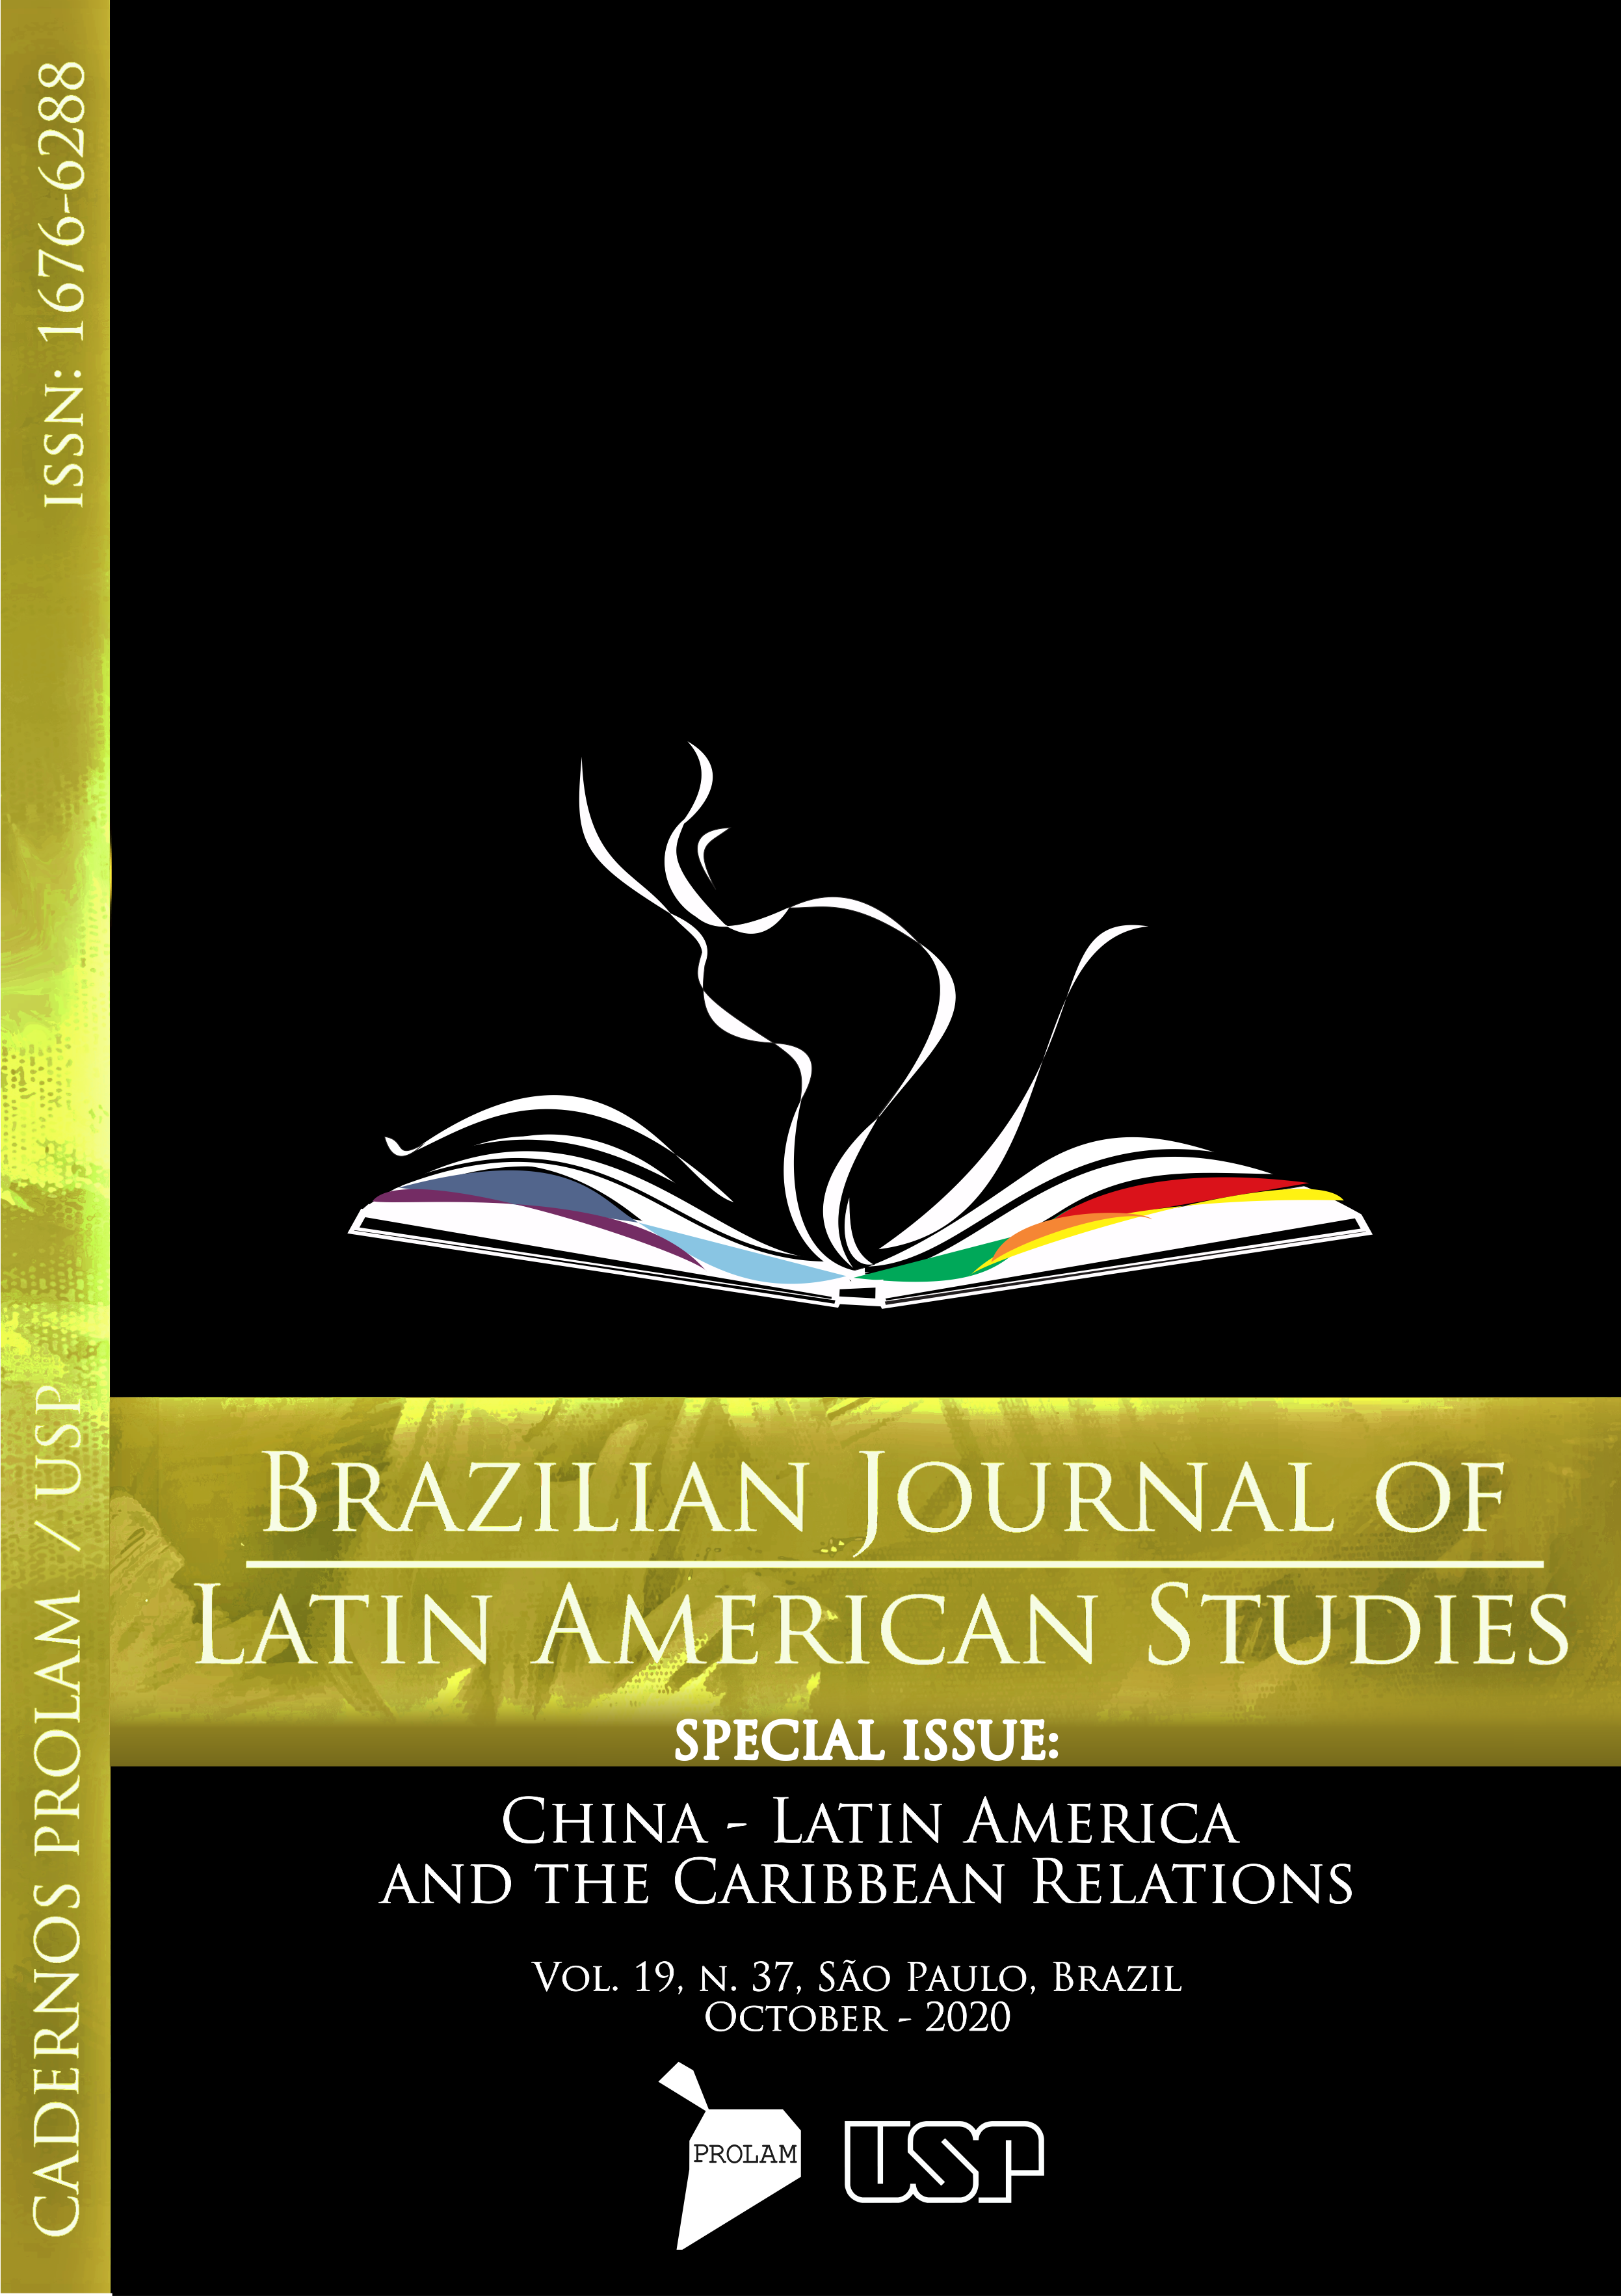 					Visualizar v. 19 n. 37 (2020): Dossiê: Relações China - América Latina e Caribe
				